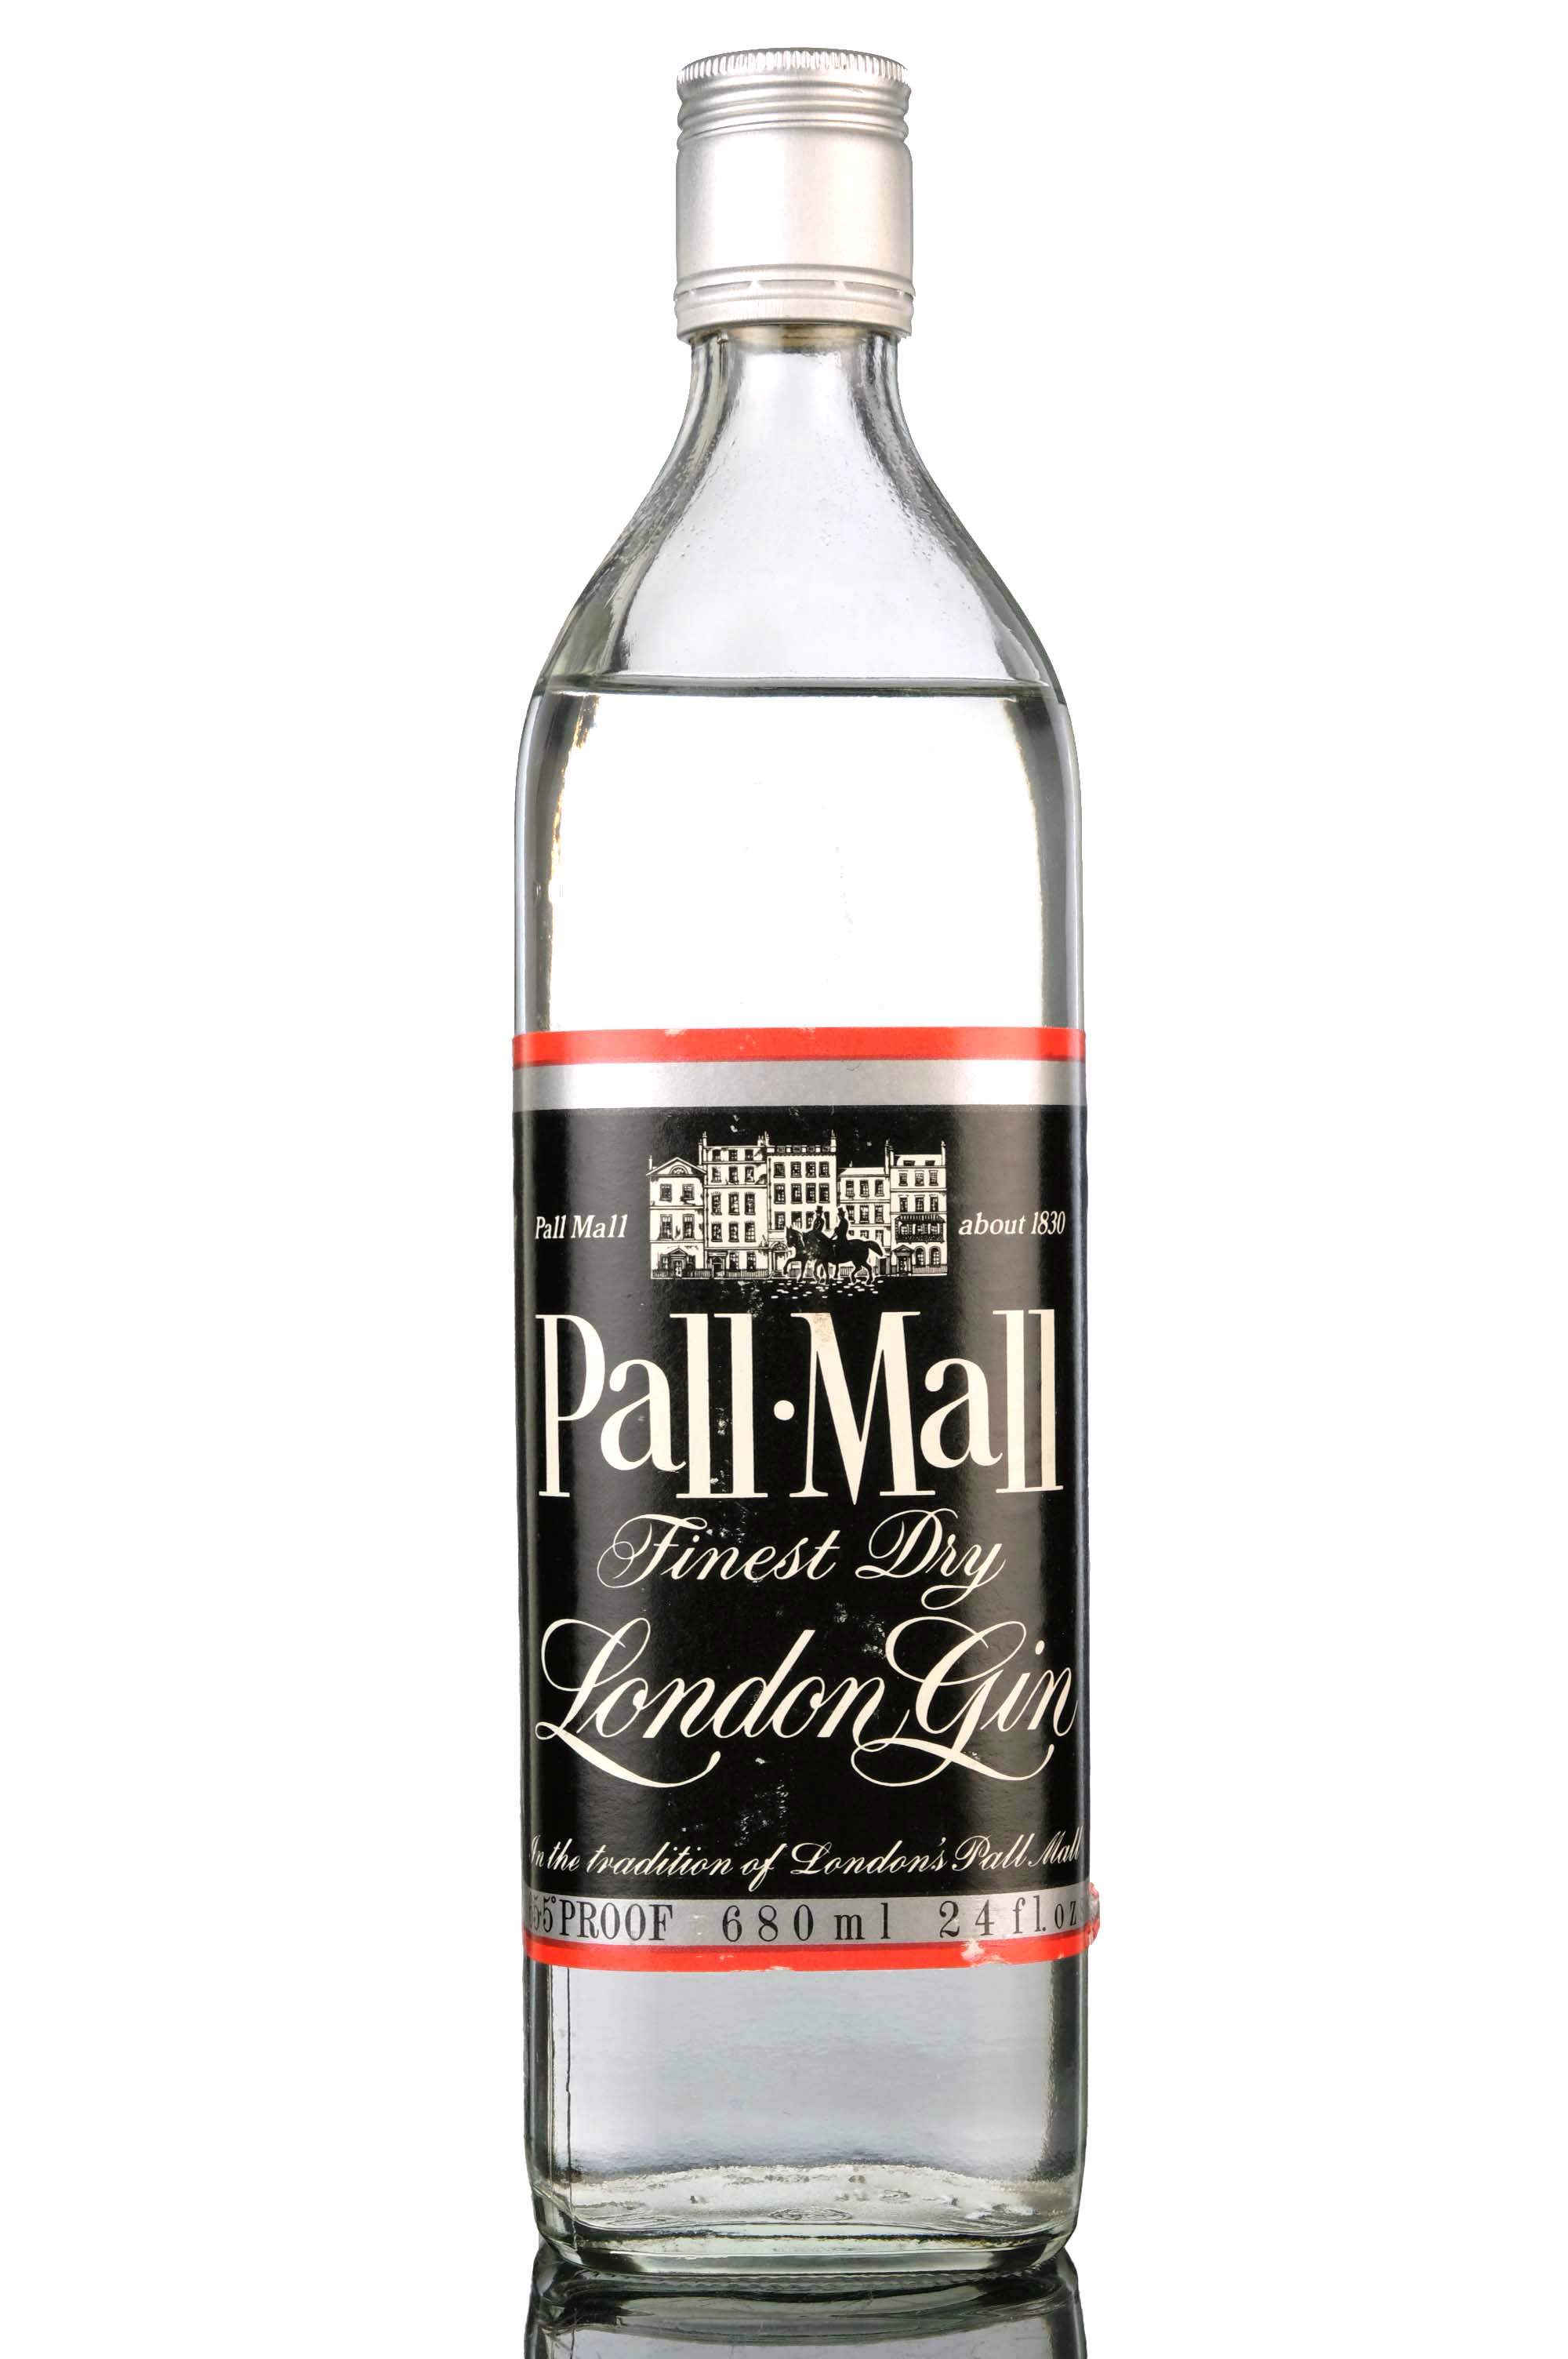 Pall Mall London Gin